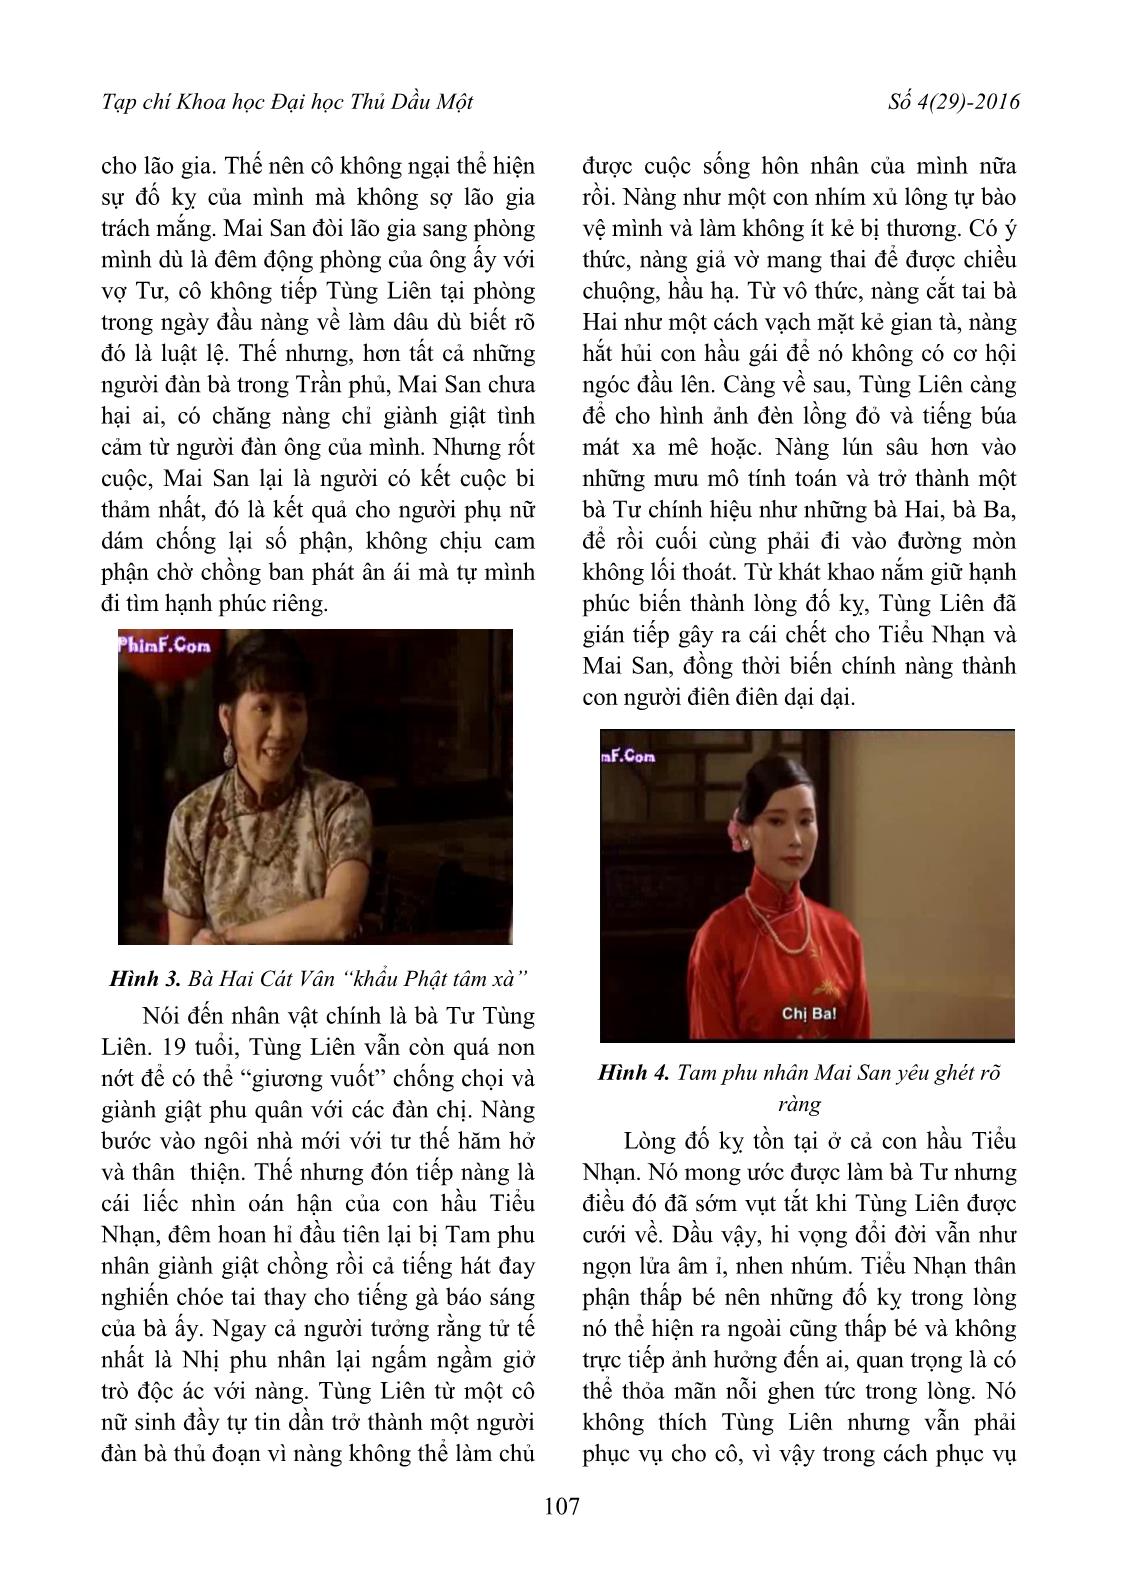 Tính cách và tư tưởng Trung Hoa qua bộ phim “Đèn lồng đỏ treo cao” trang 5